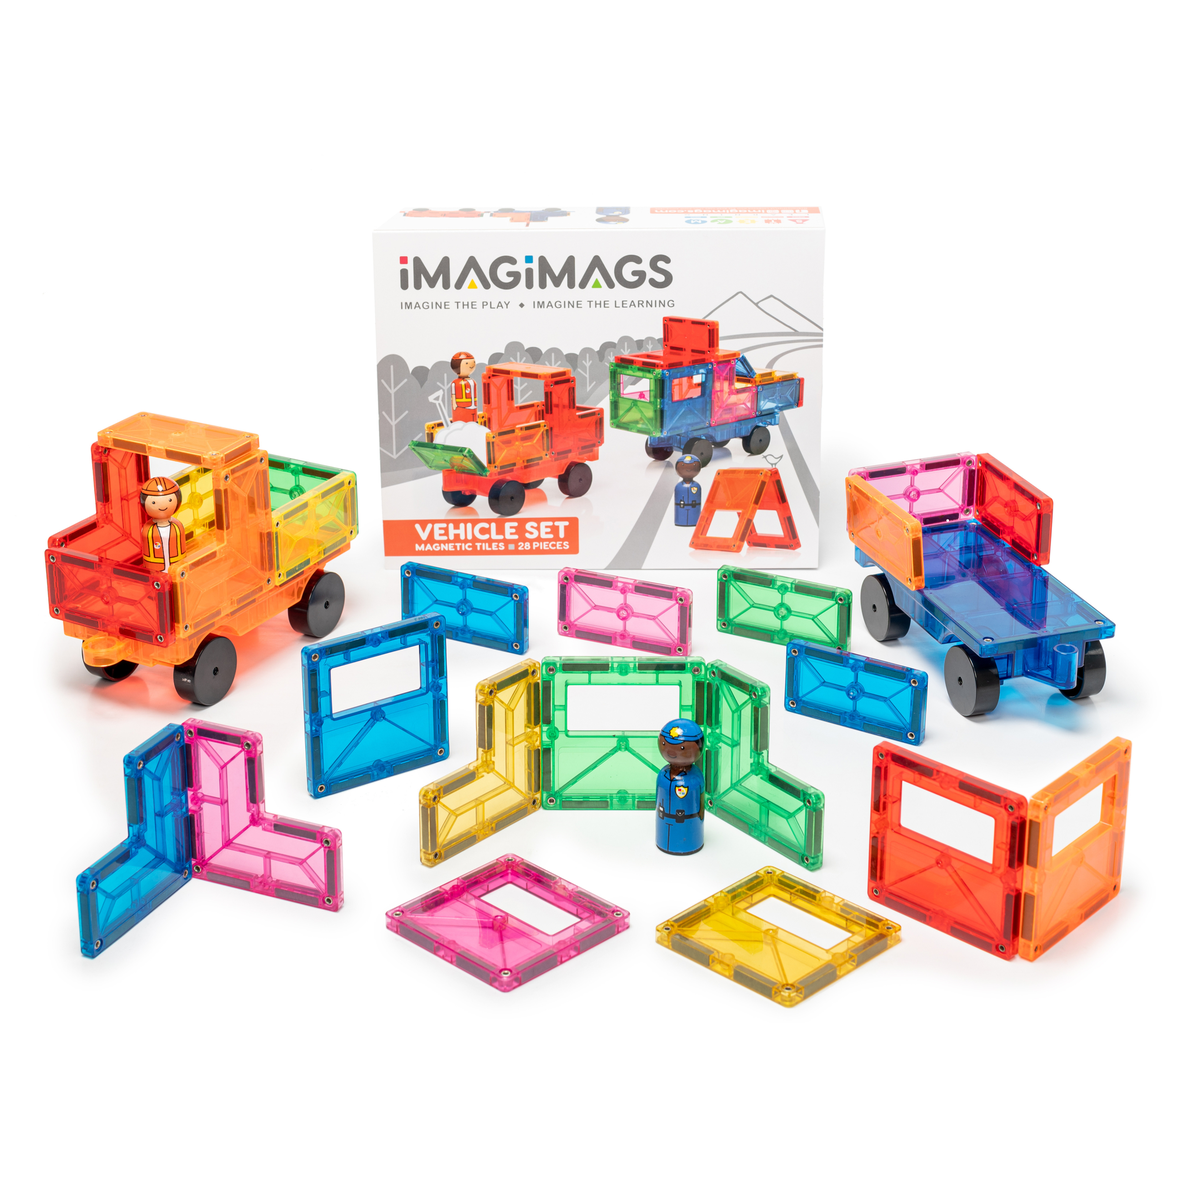 Magnescape Magnetic building blocks & tiles - 132 Piece.